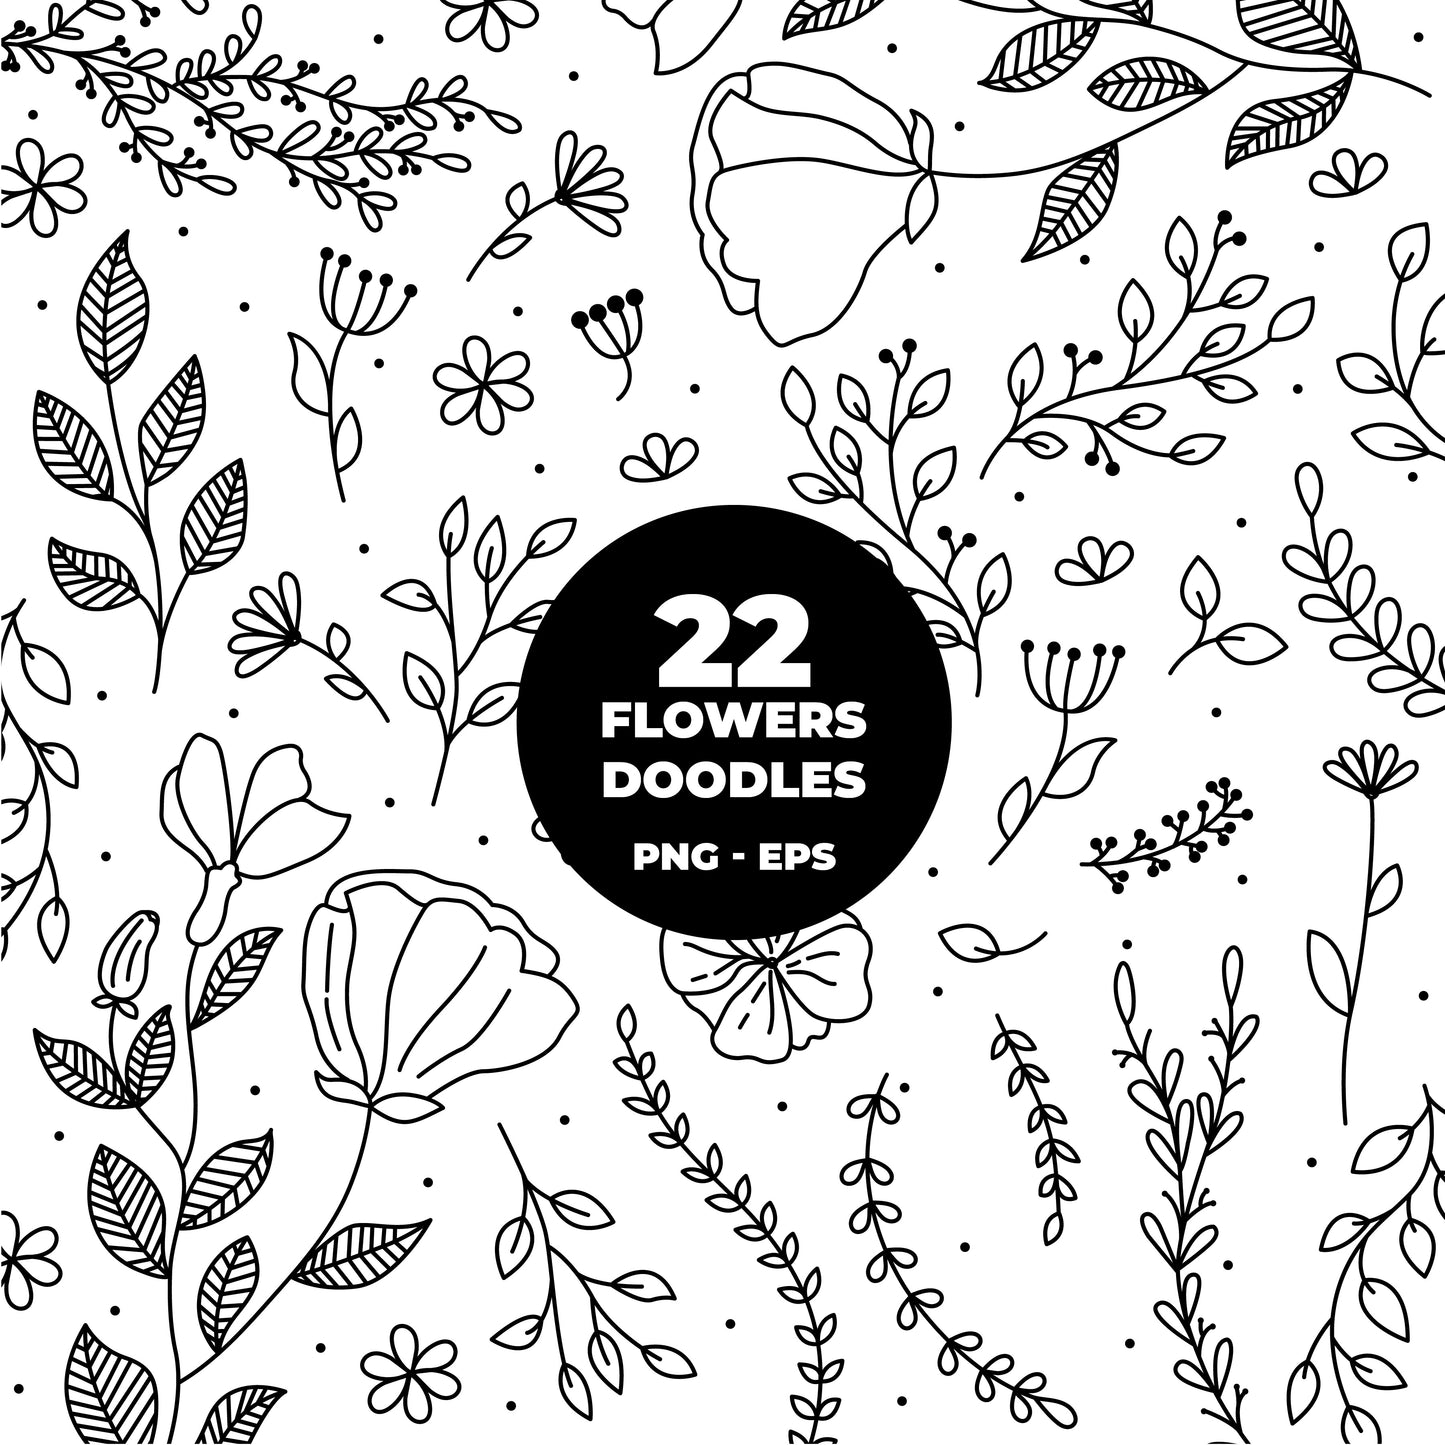 COD1245  Flowers doodle cliparts, Succulent SVG, CACTUS SVG, House Plants Clipart, Terrarium Cactus Art, Cactus Doodles Clipart, Digital Stamp